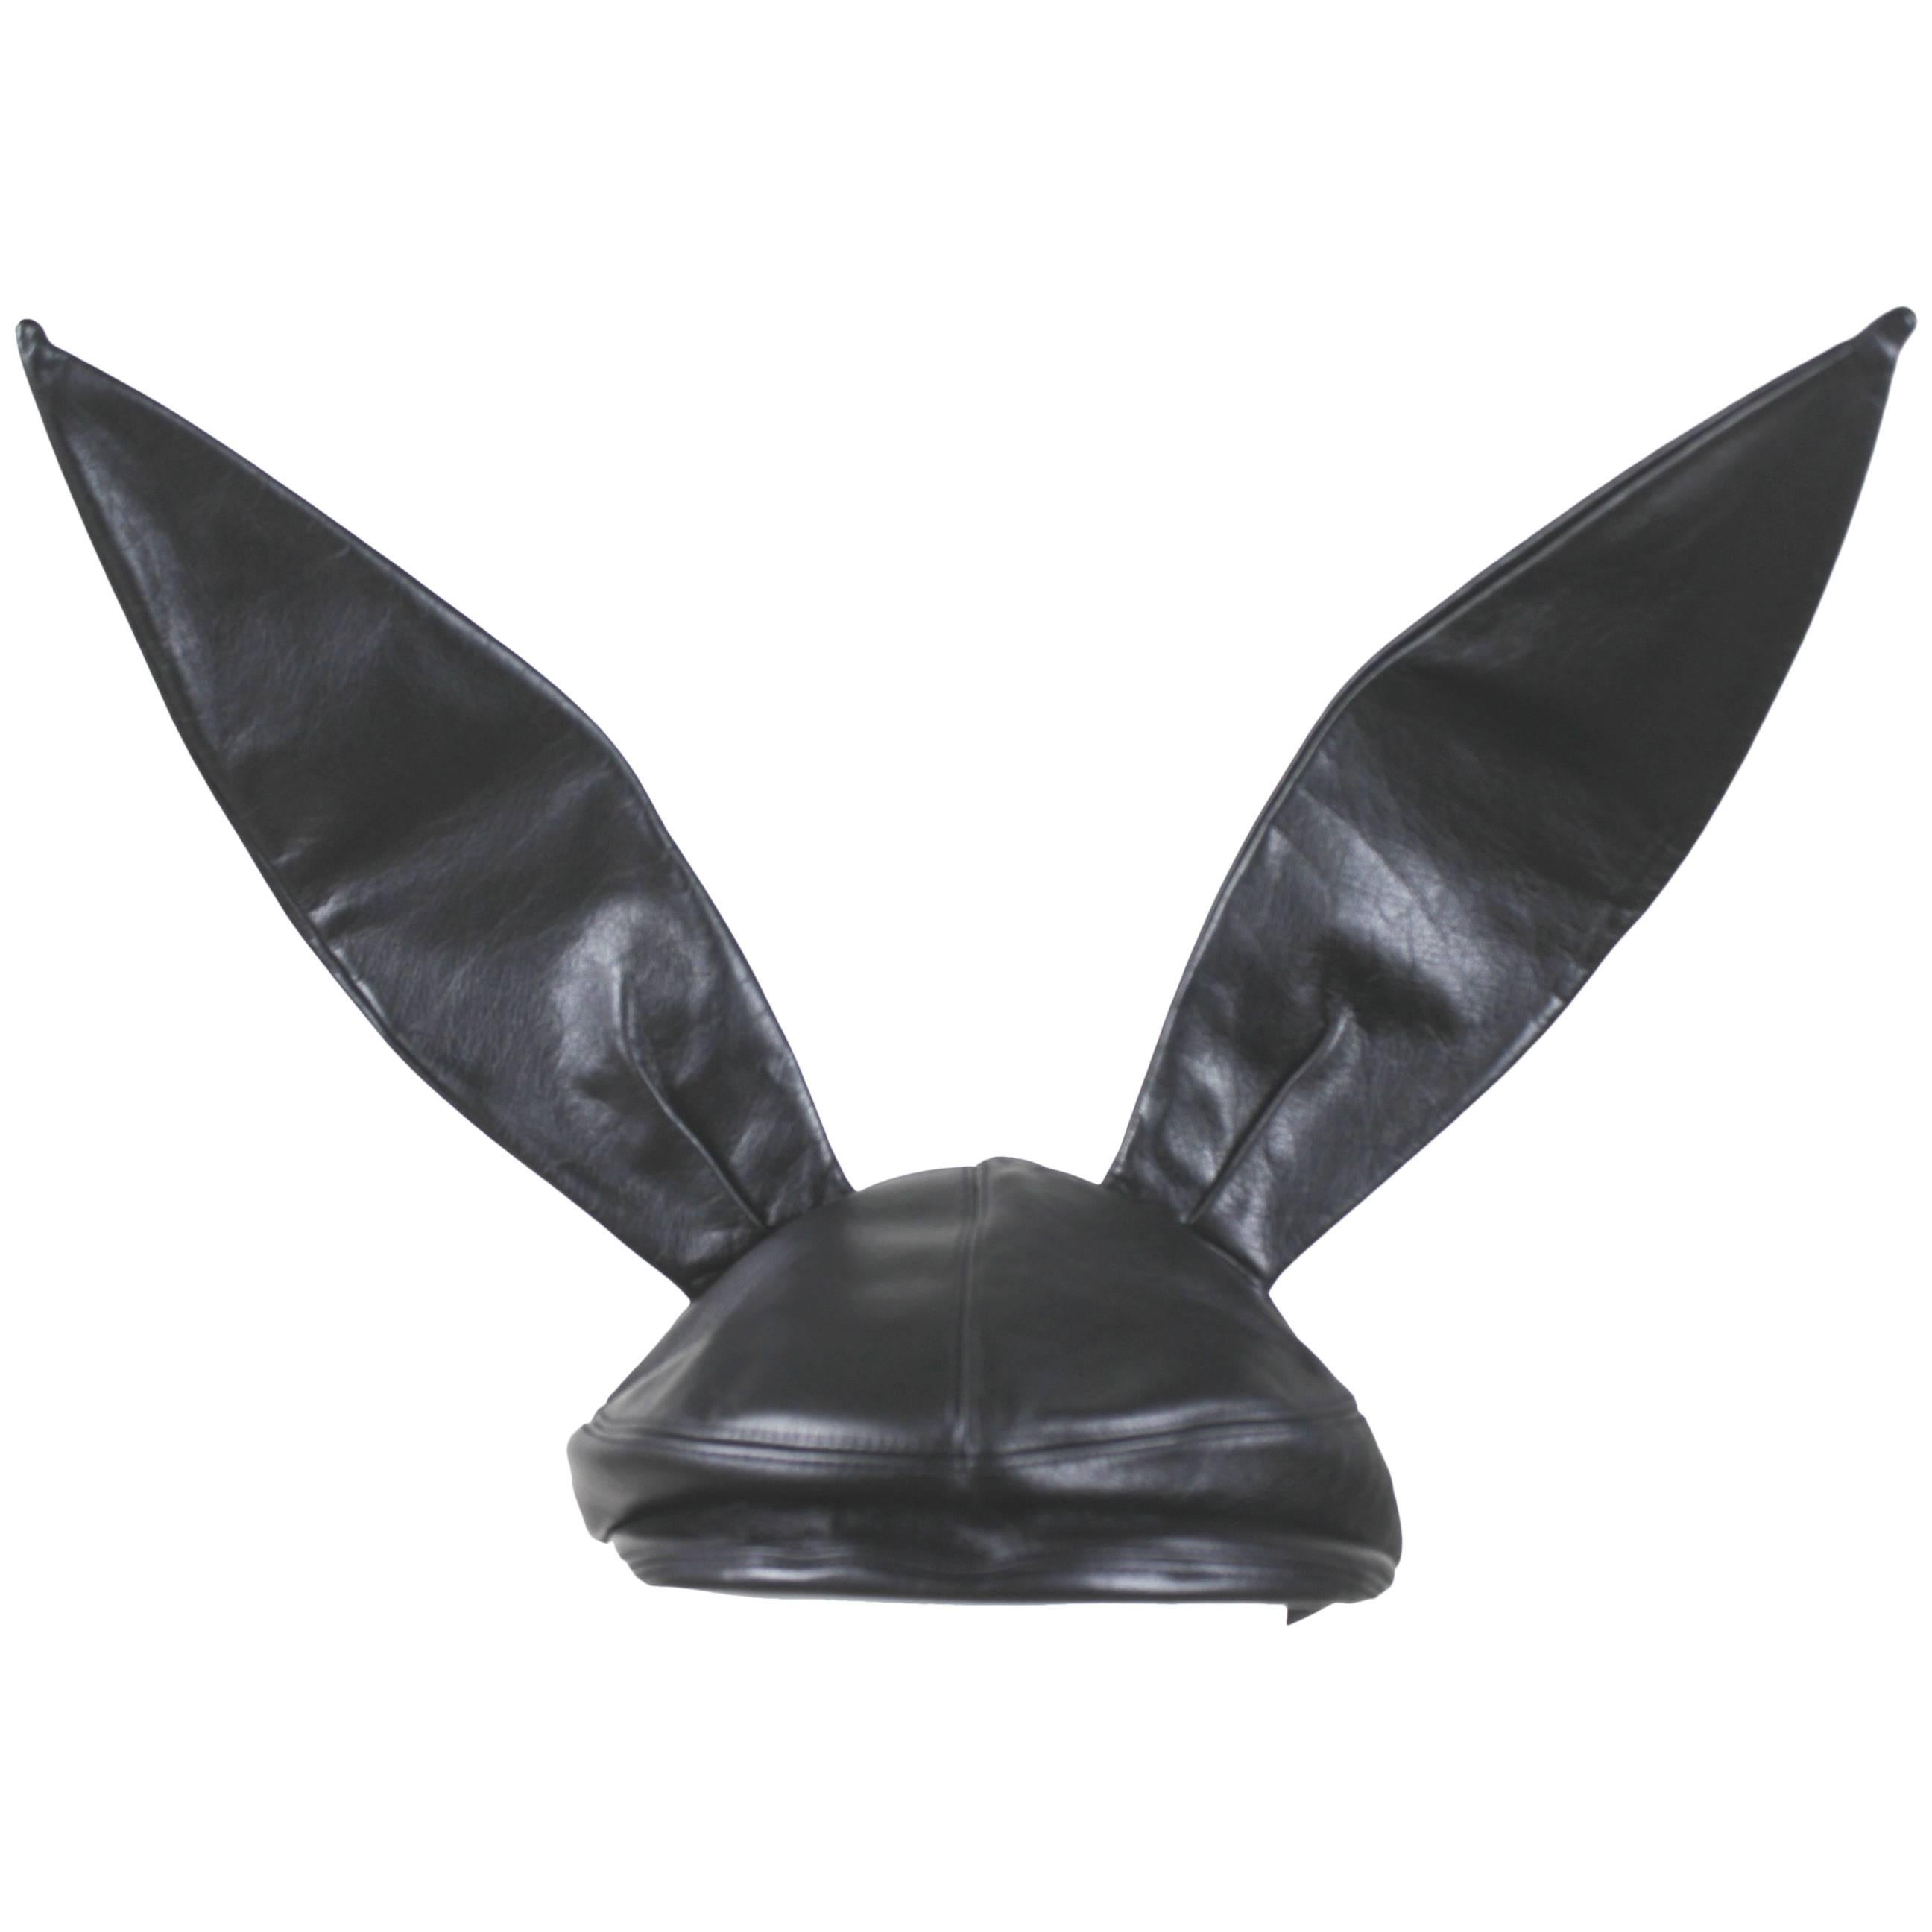 Comme des Garcons / Stephen Jones Leather Bunny Ear Cap AD 2013